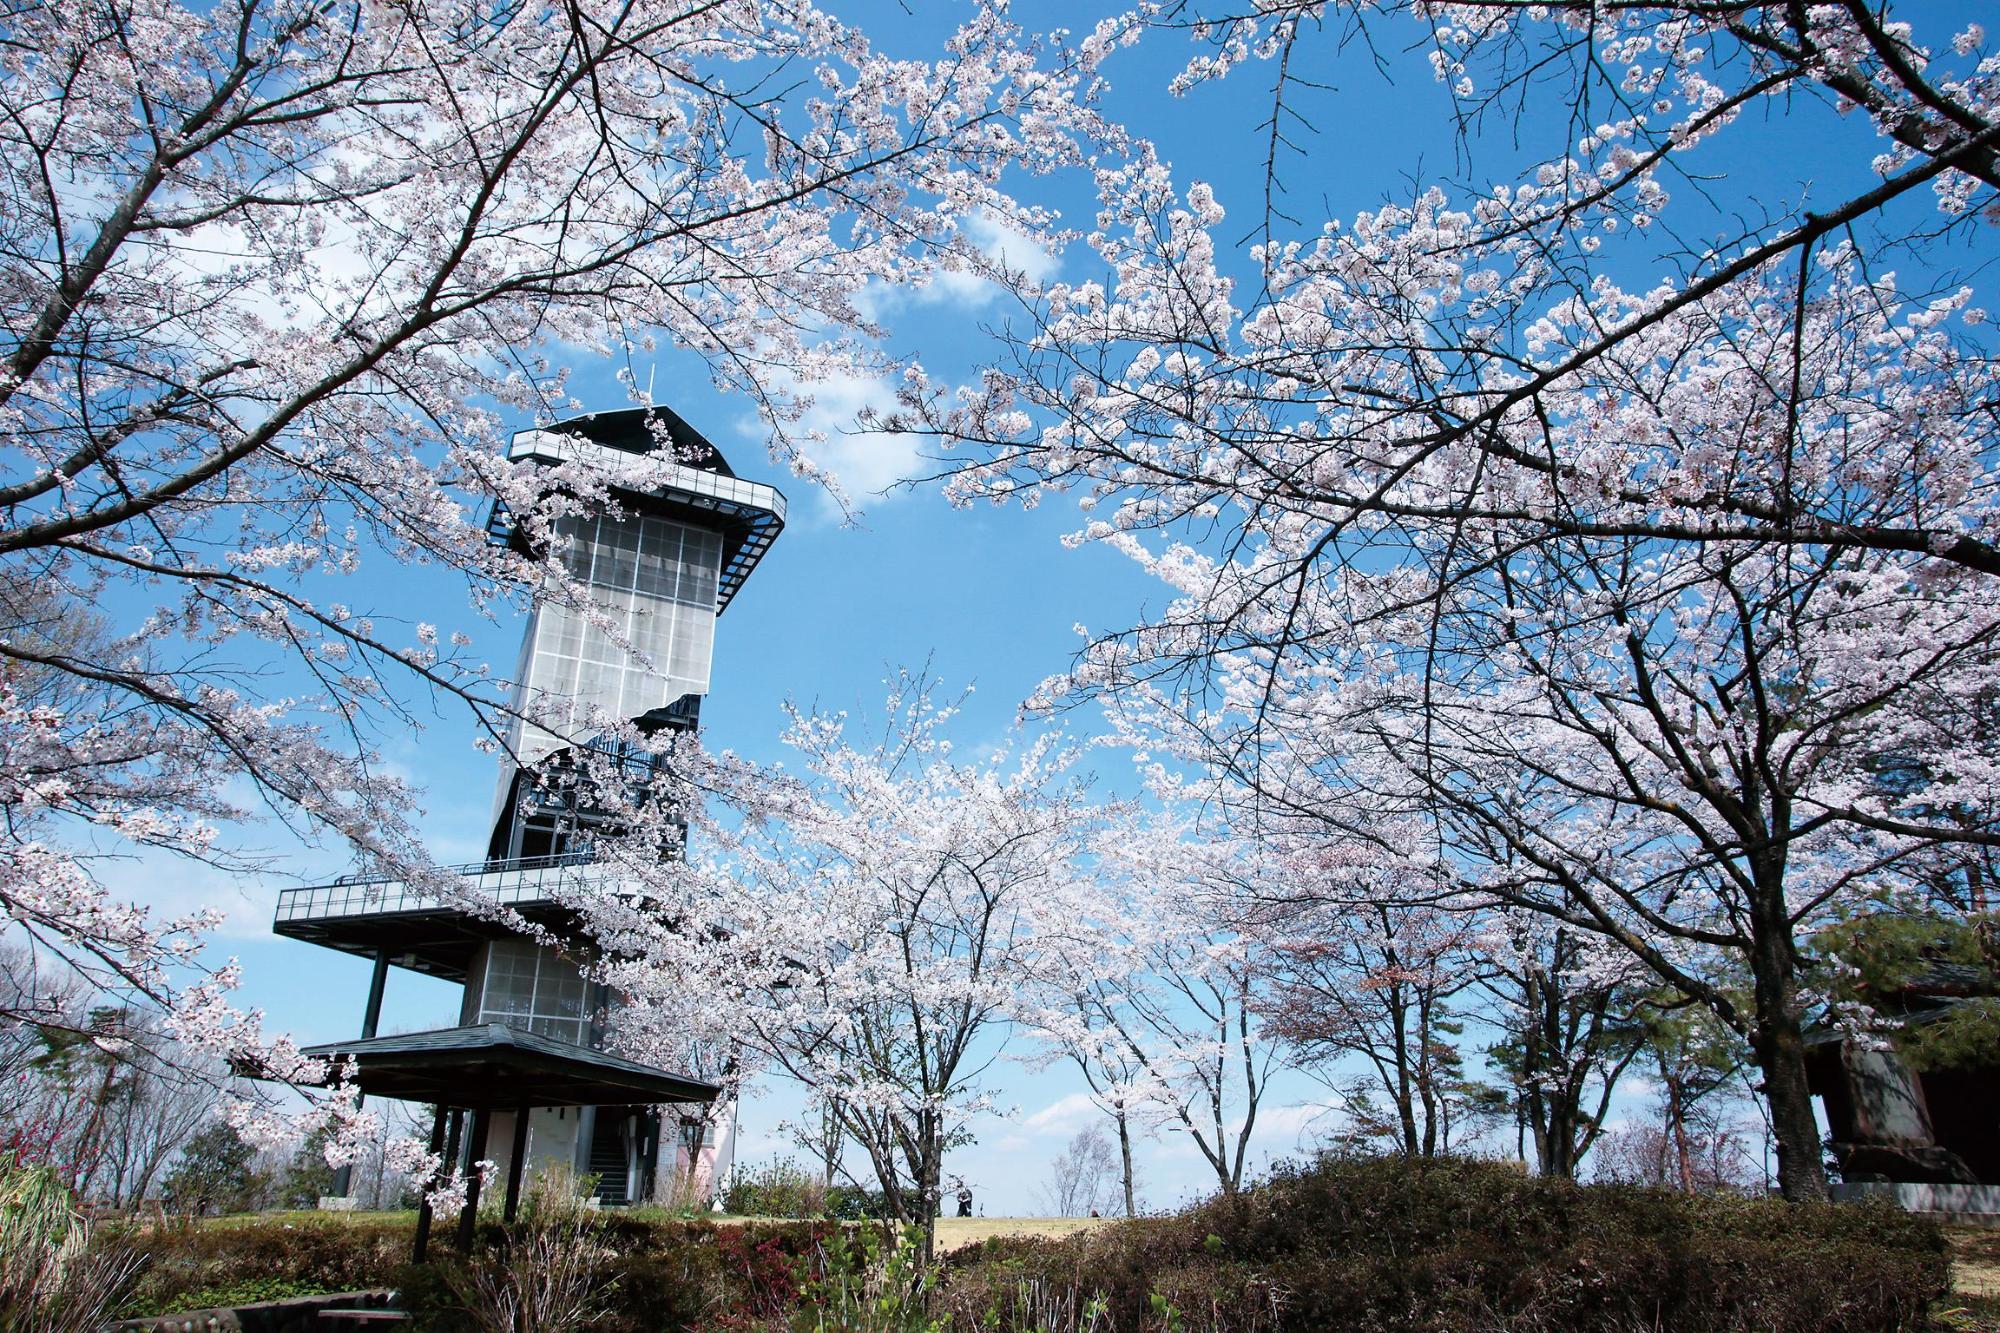 青空の下建つ二ノ宮山展望塔の外観の周りを囲むように咲いている綺麗なピンク色の花を付けた桜の木々の写真